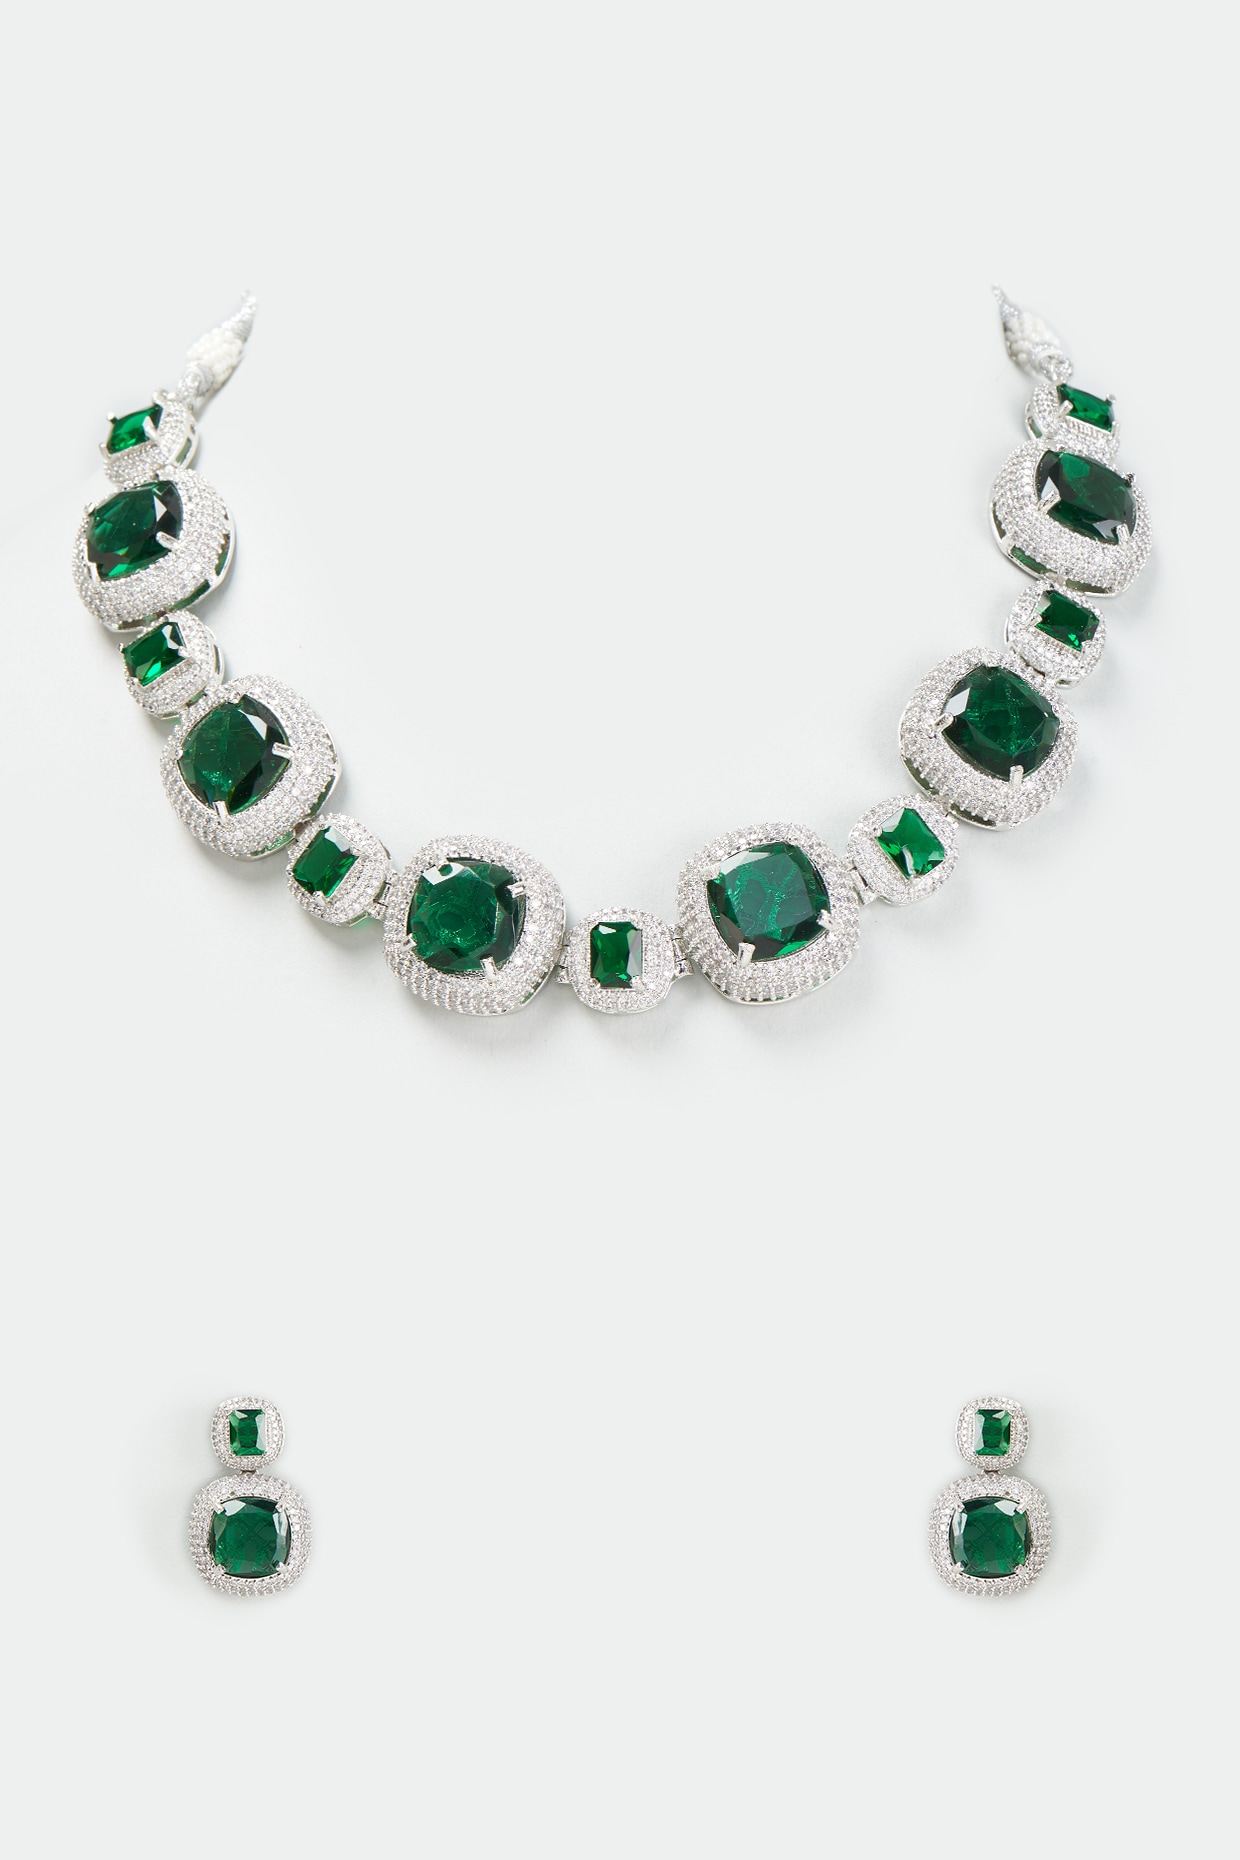 Green Emerald, Genuine Swarovski Crystal Necklace, 14k Sterling Silver Emerald  Necklace, Green Crystal, May Birthstone, Mothers Day - Etsy